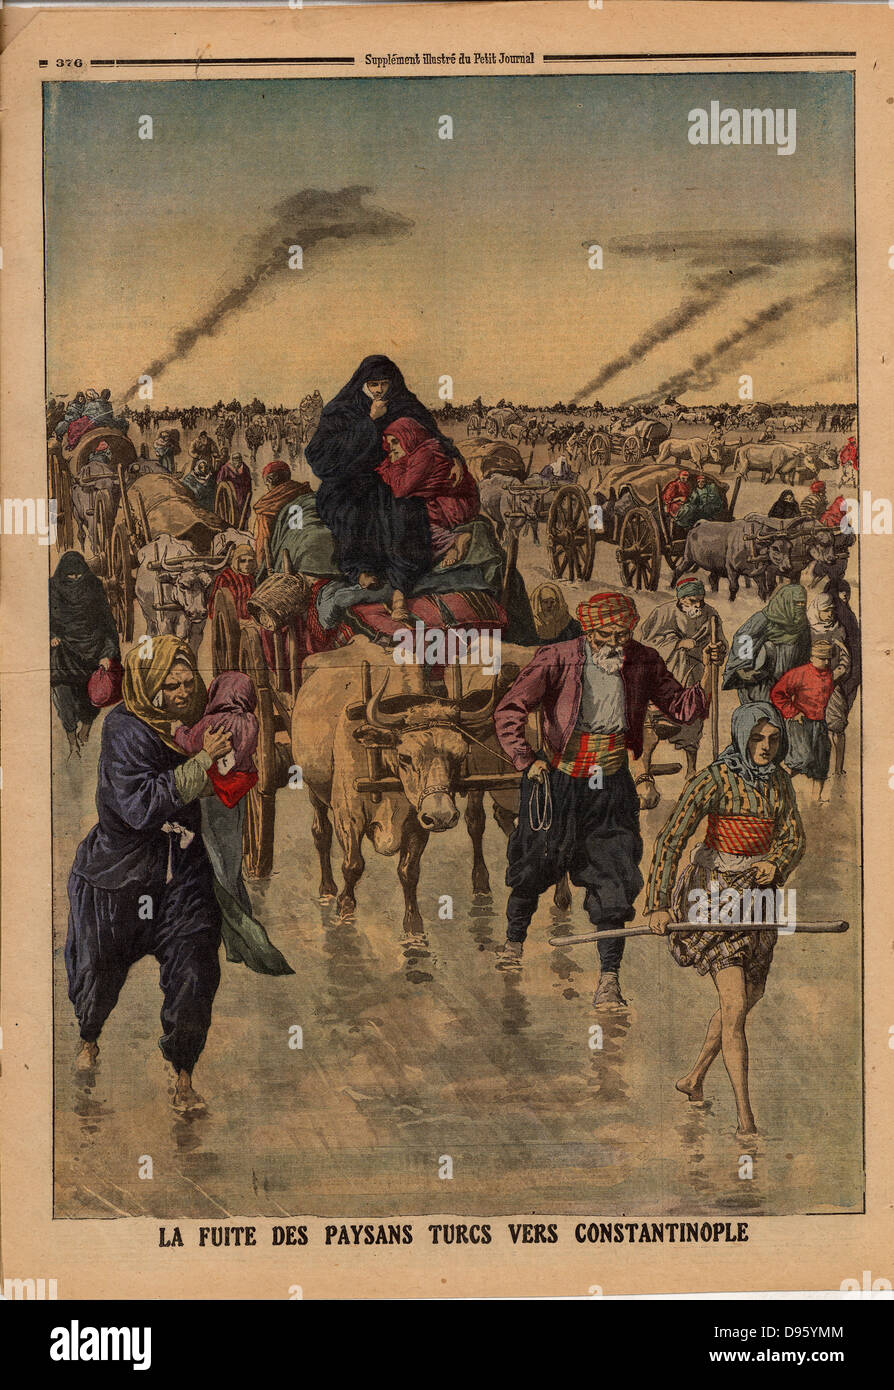 Las guerras de los Balcanes: Vuelo de Campesinos Turcos hacia Constantinopla. Desde "Le Petit Journal", París, 24 de noviembre de 1912. Foto de stock